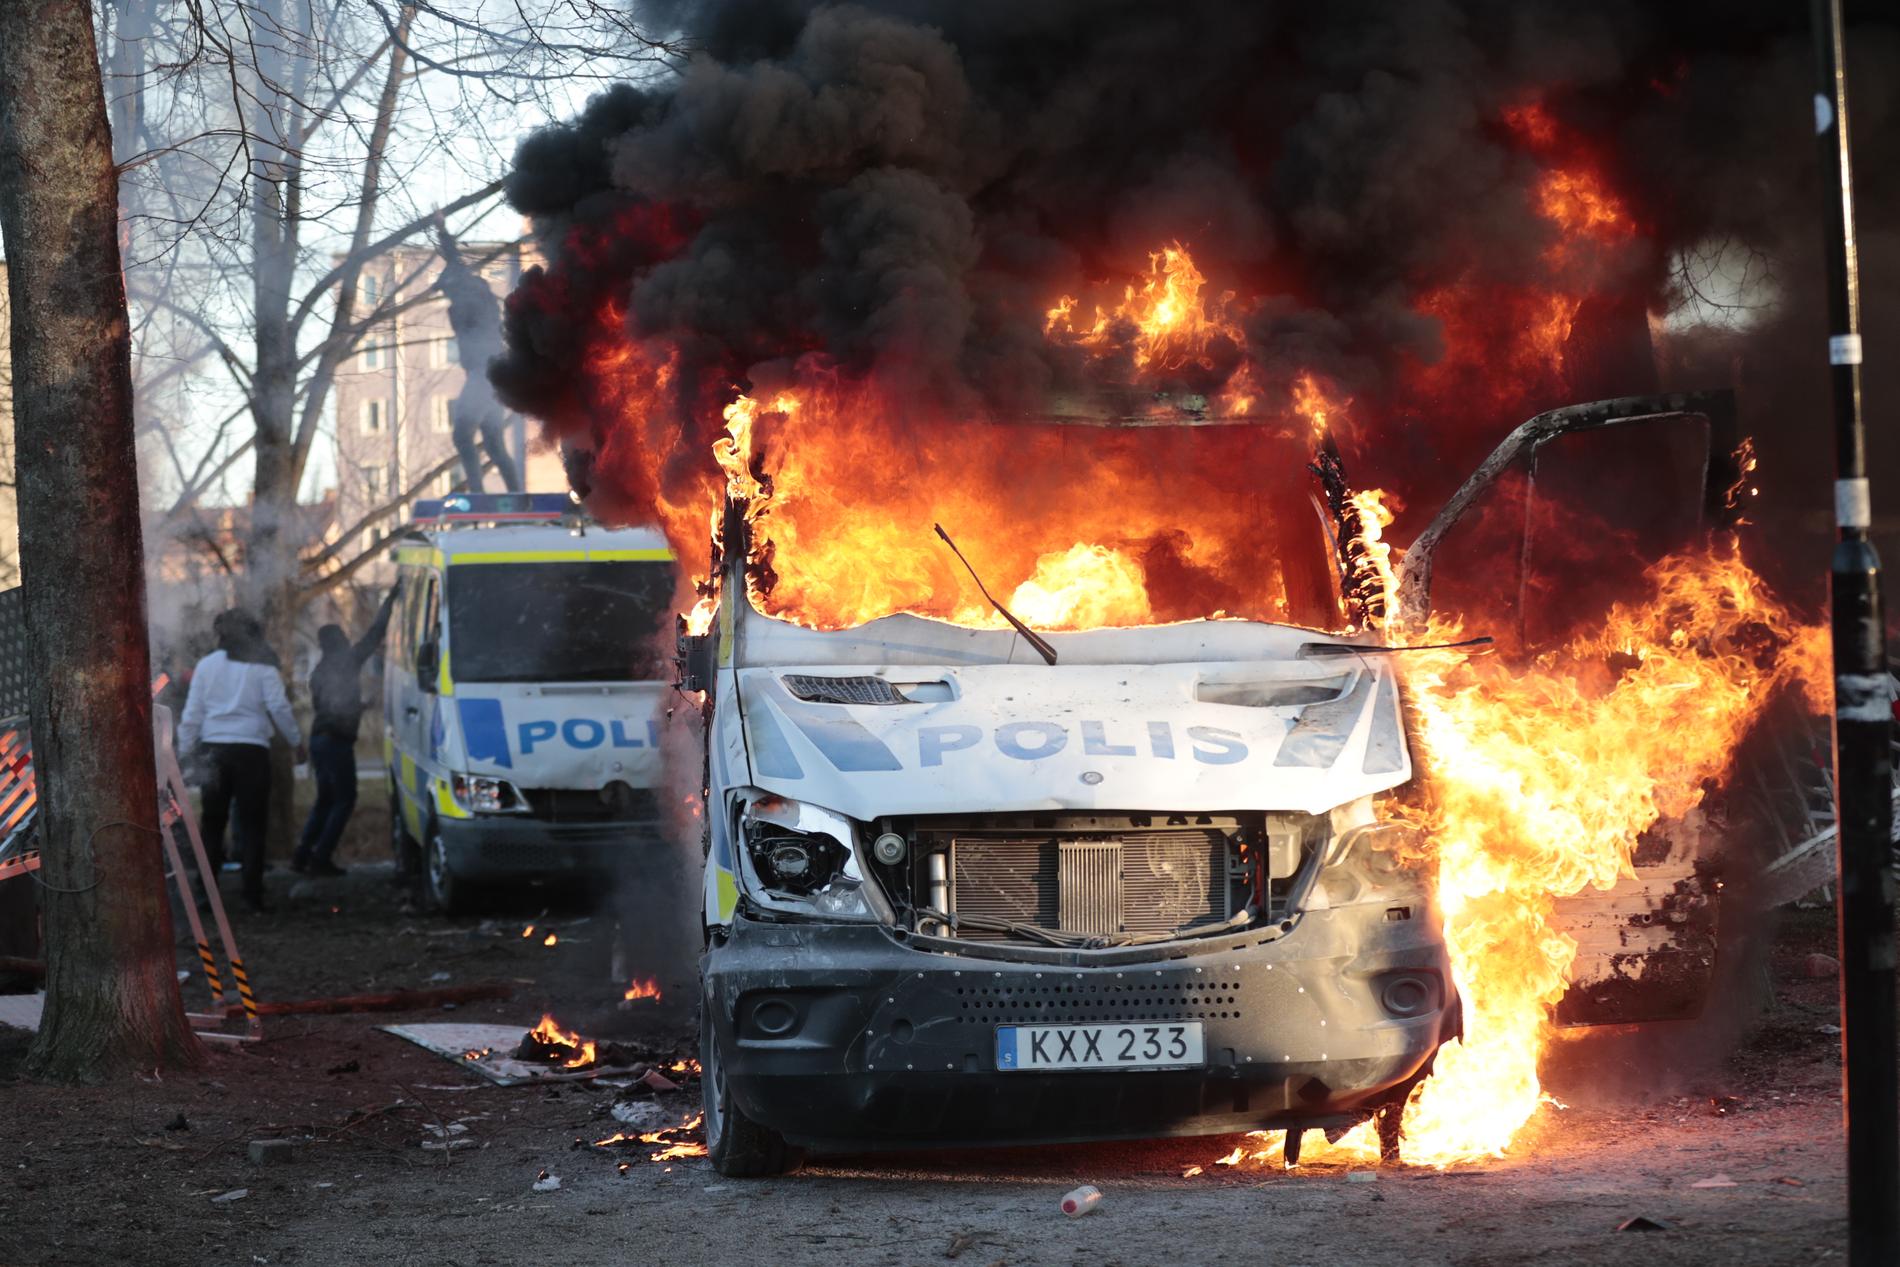 Polisbussar i brand vid påskupploppen i Örebro under långfredagen.